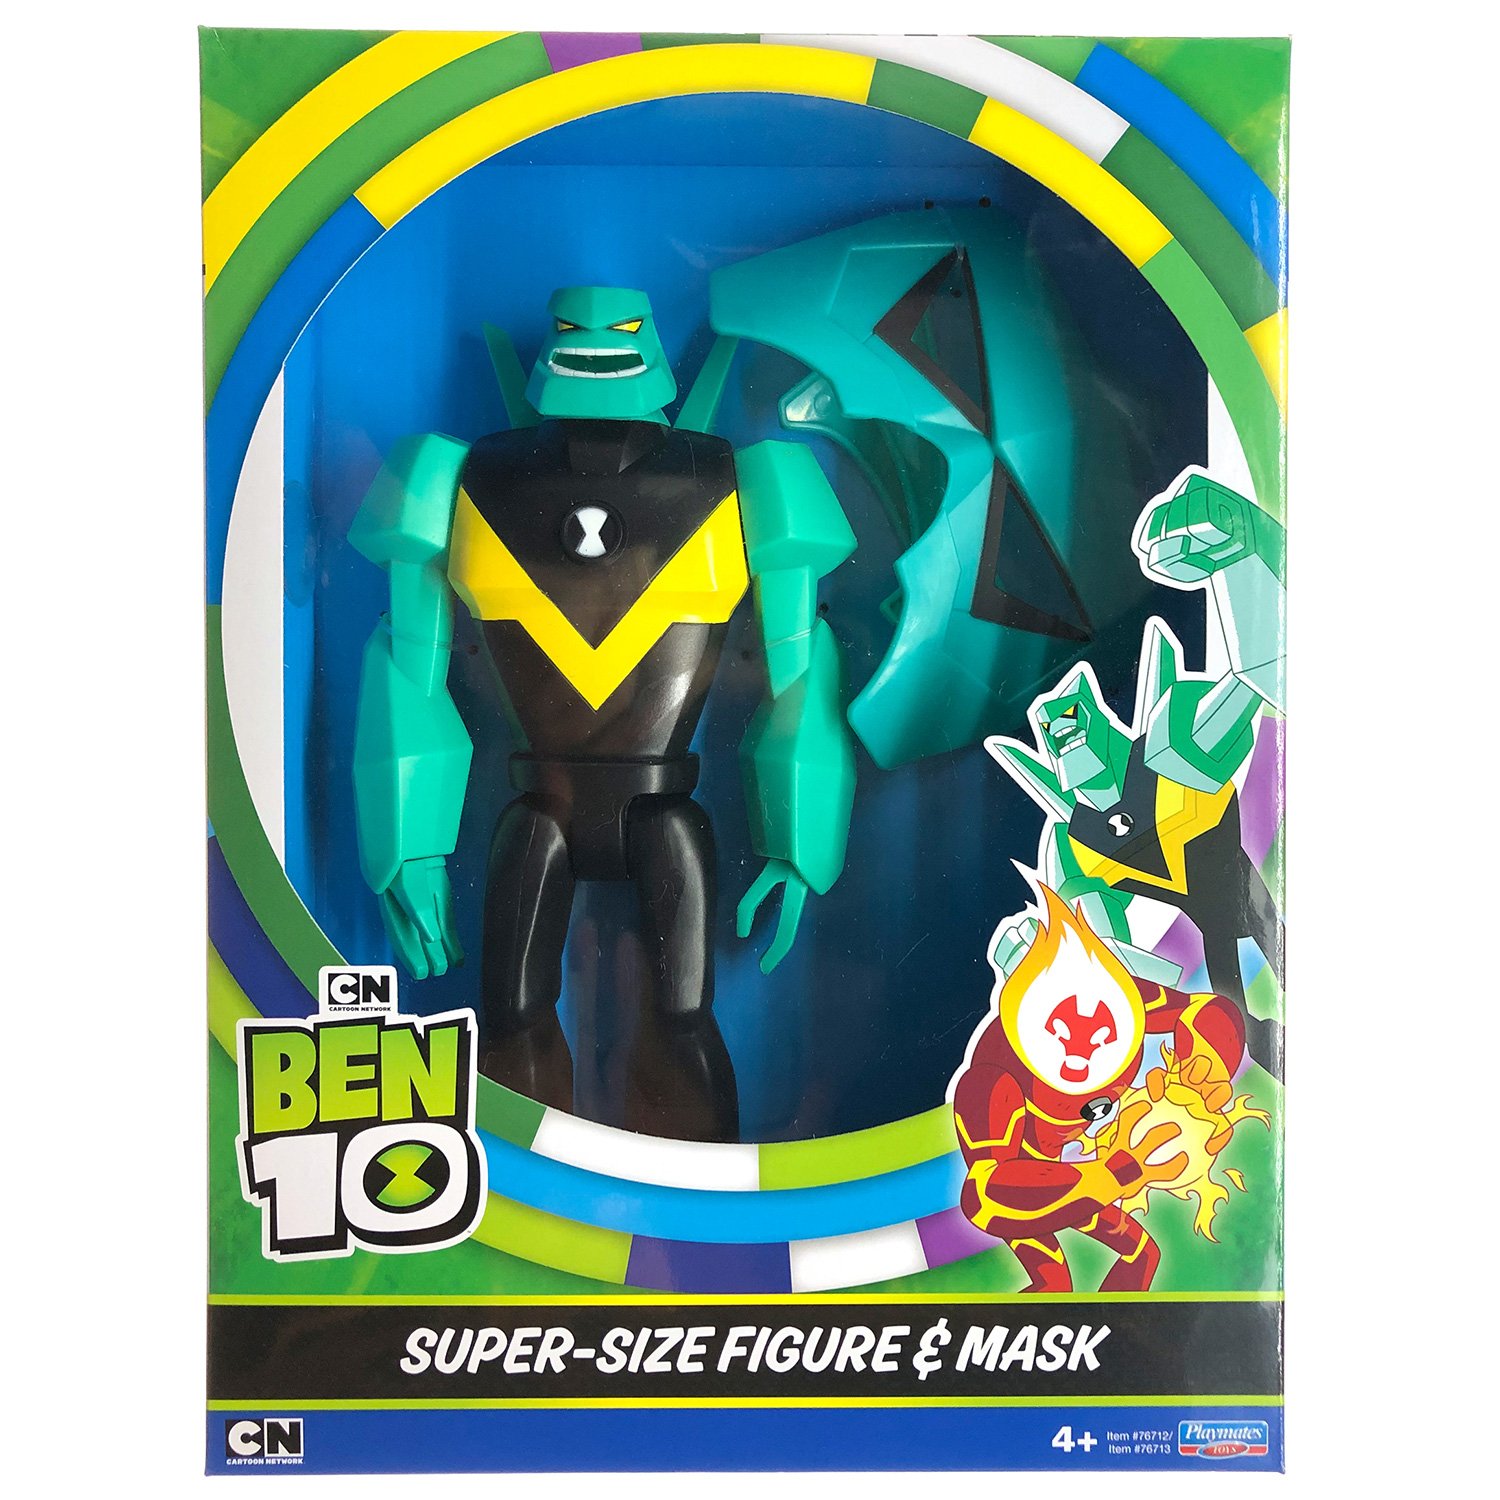 Ben 10 Игровой набор Алмаза (фигурка XL + маска для ребенка)